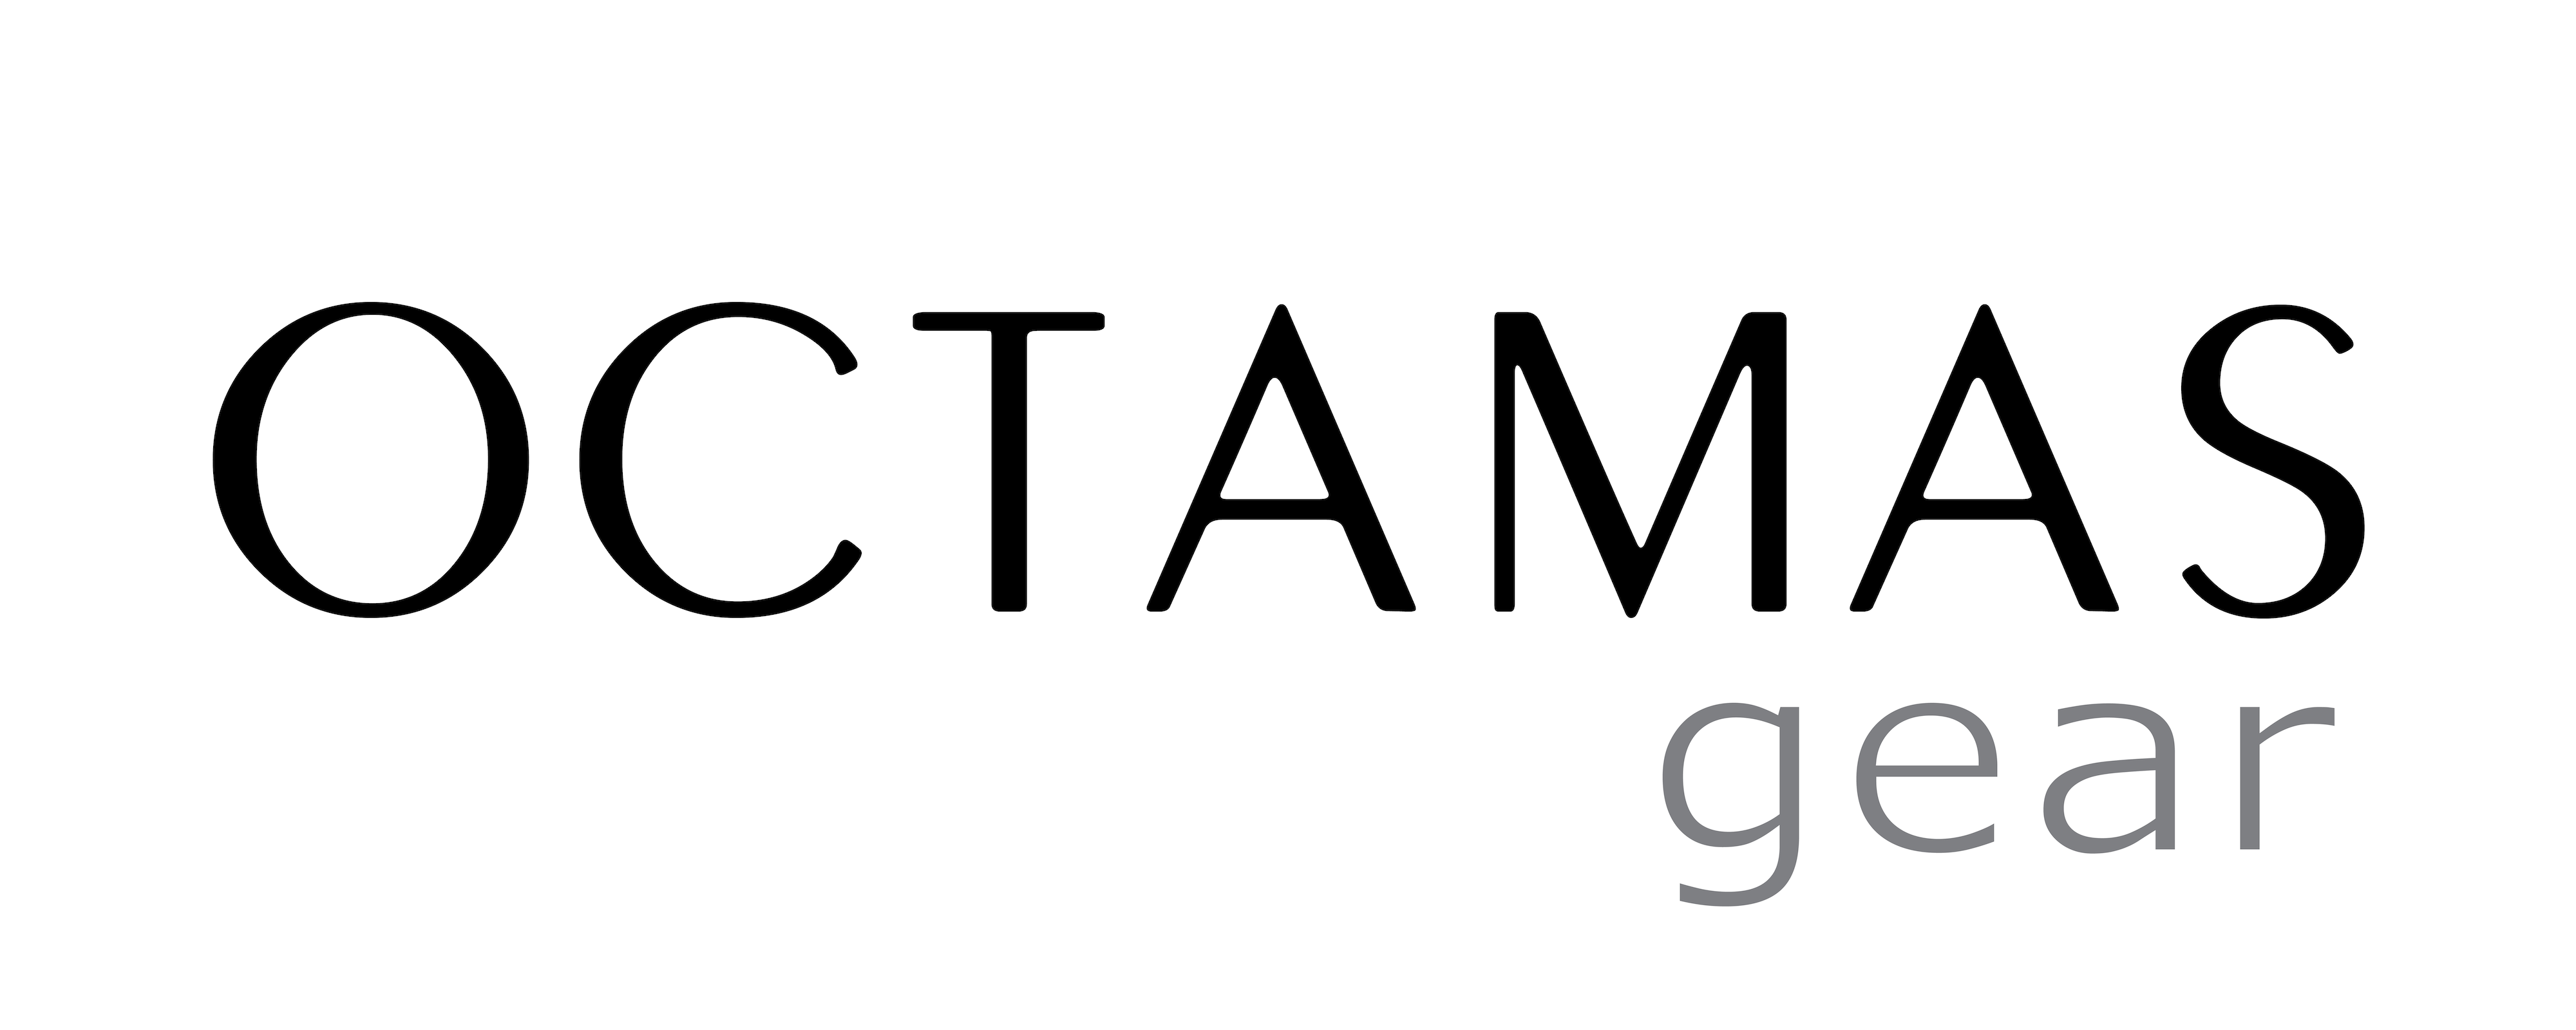 OCTAMAS gear Logo